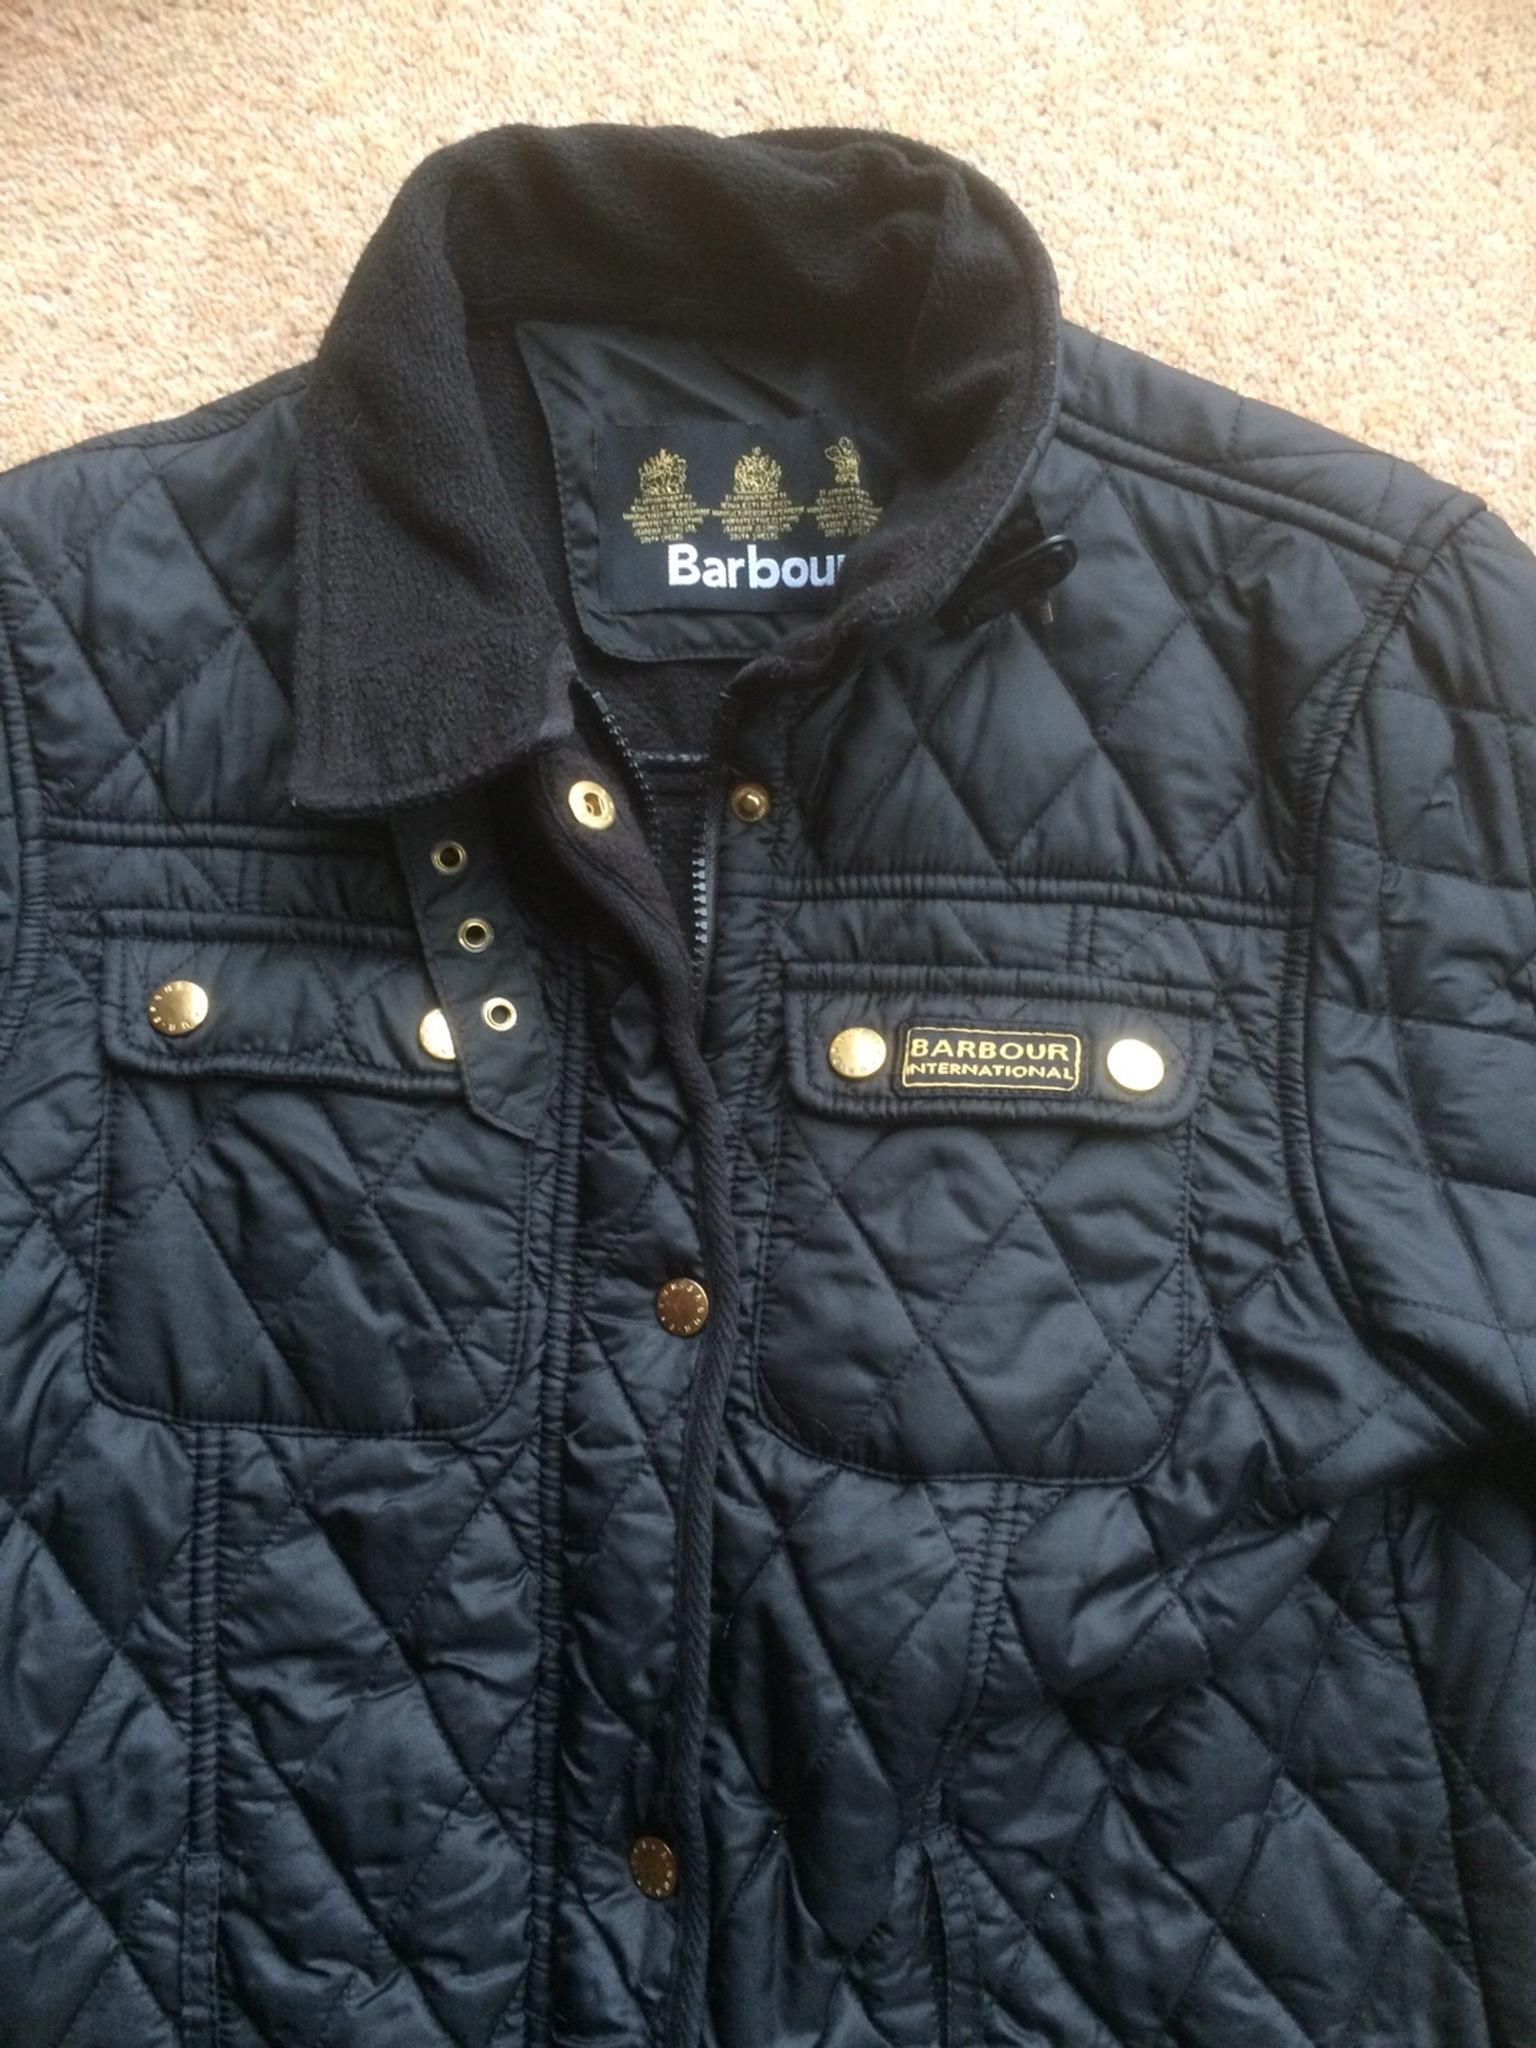 barbour jacket look alike